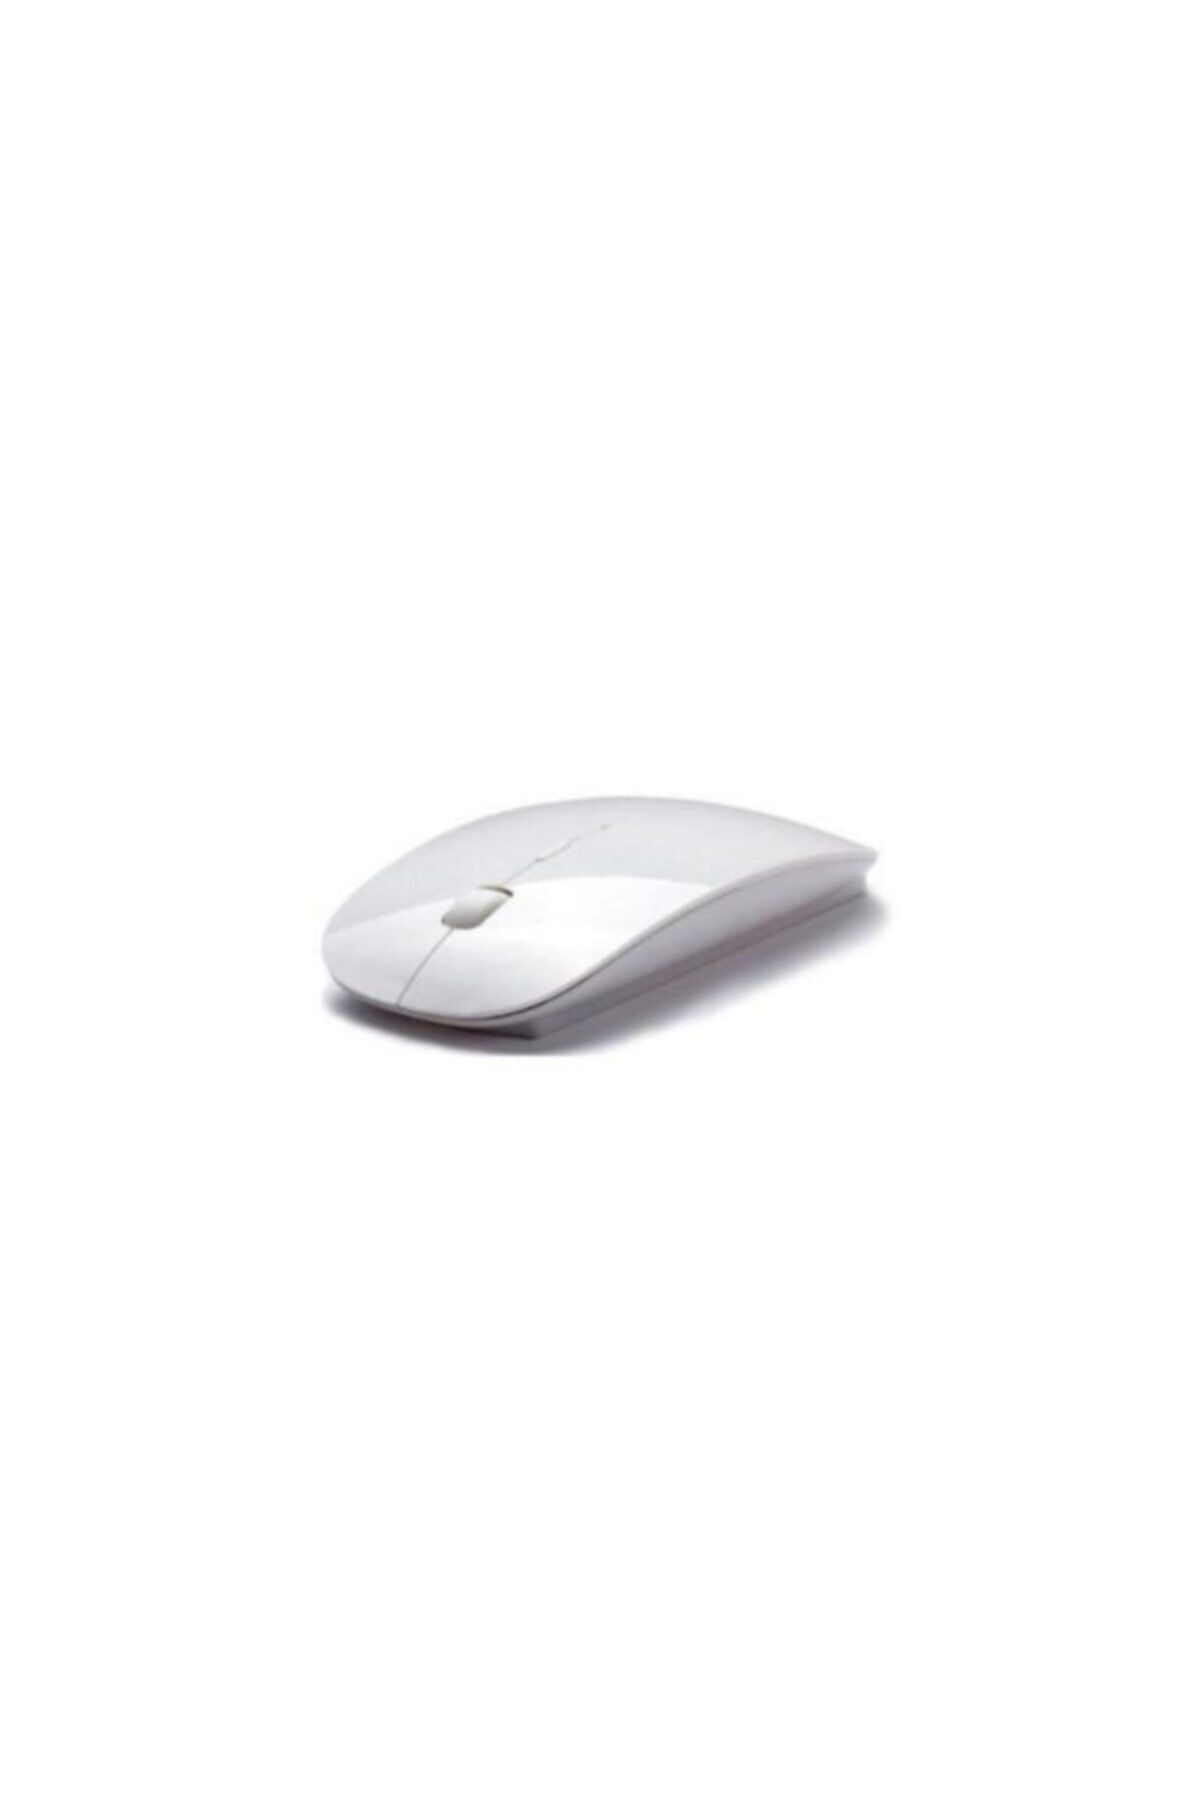 MADEPAZAR 2.4 Ghz Ergonomik Beyaz Mouse